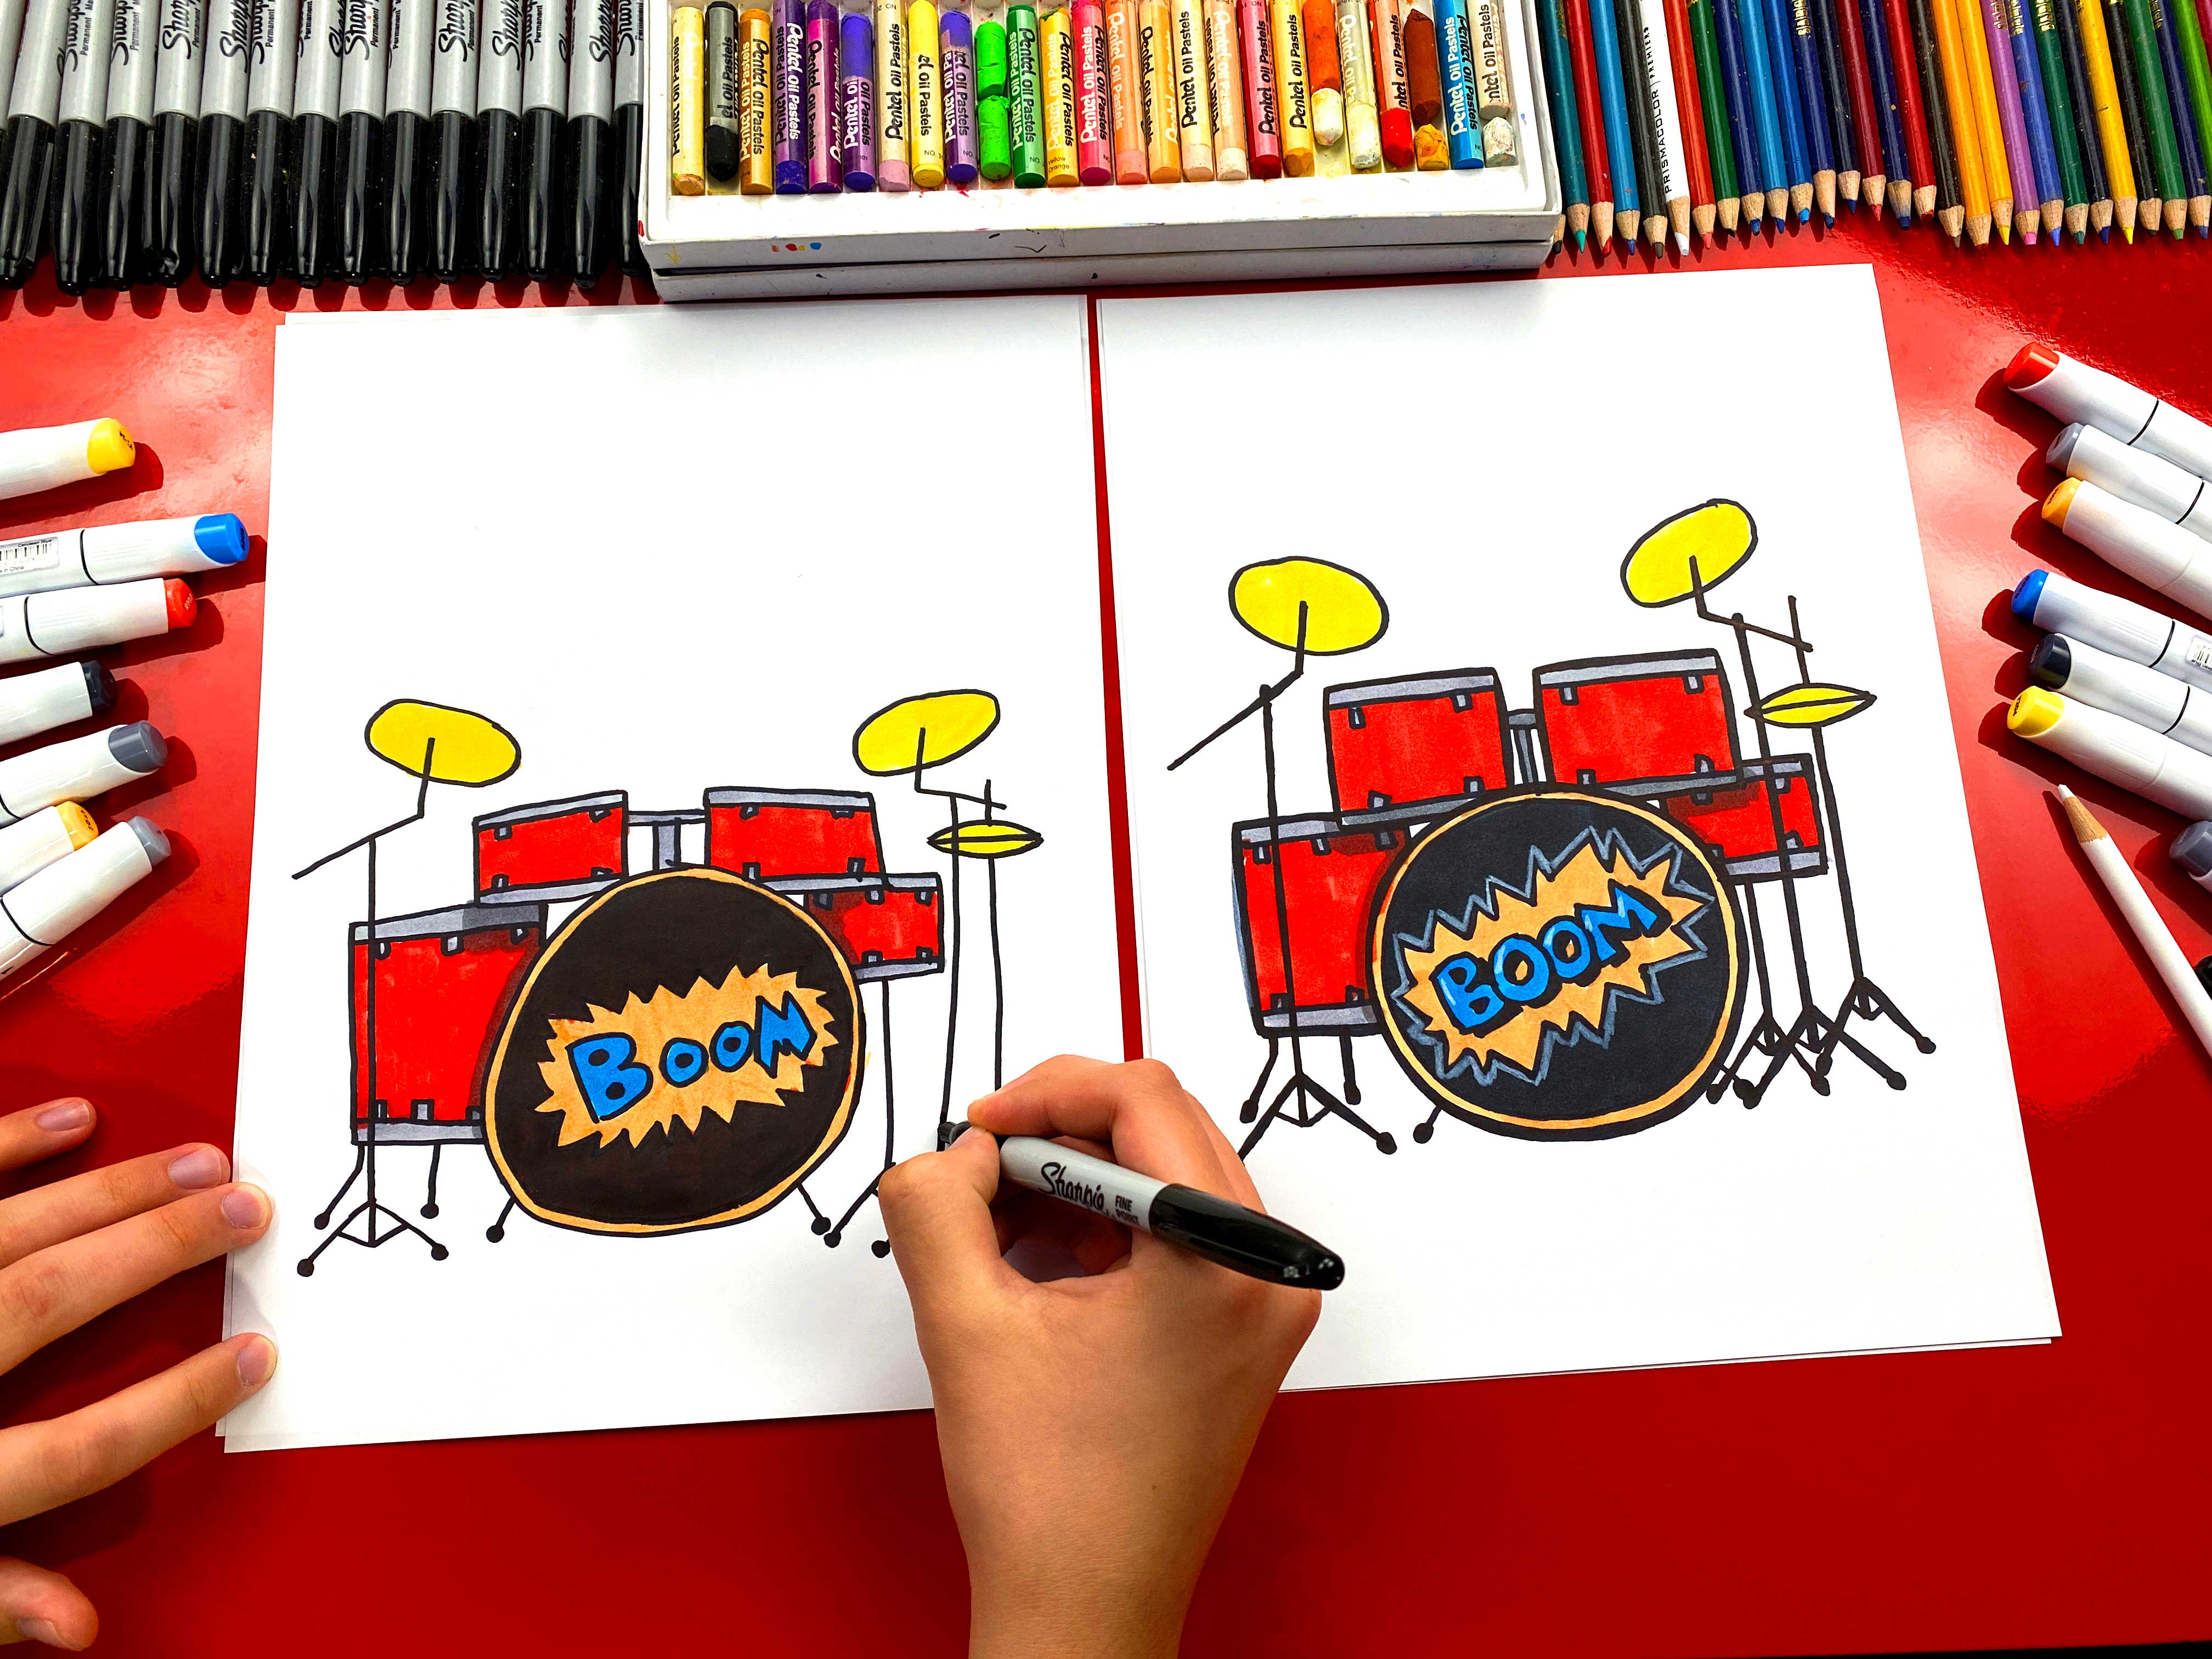 drum set drawing